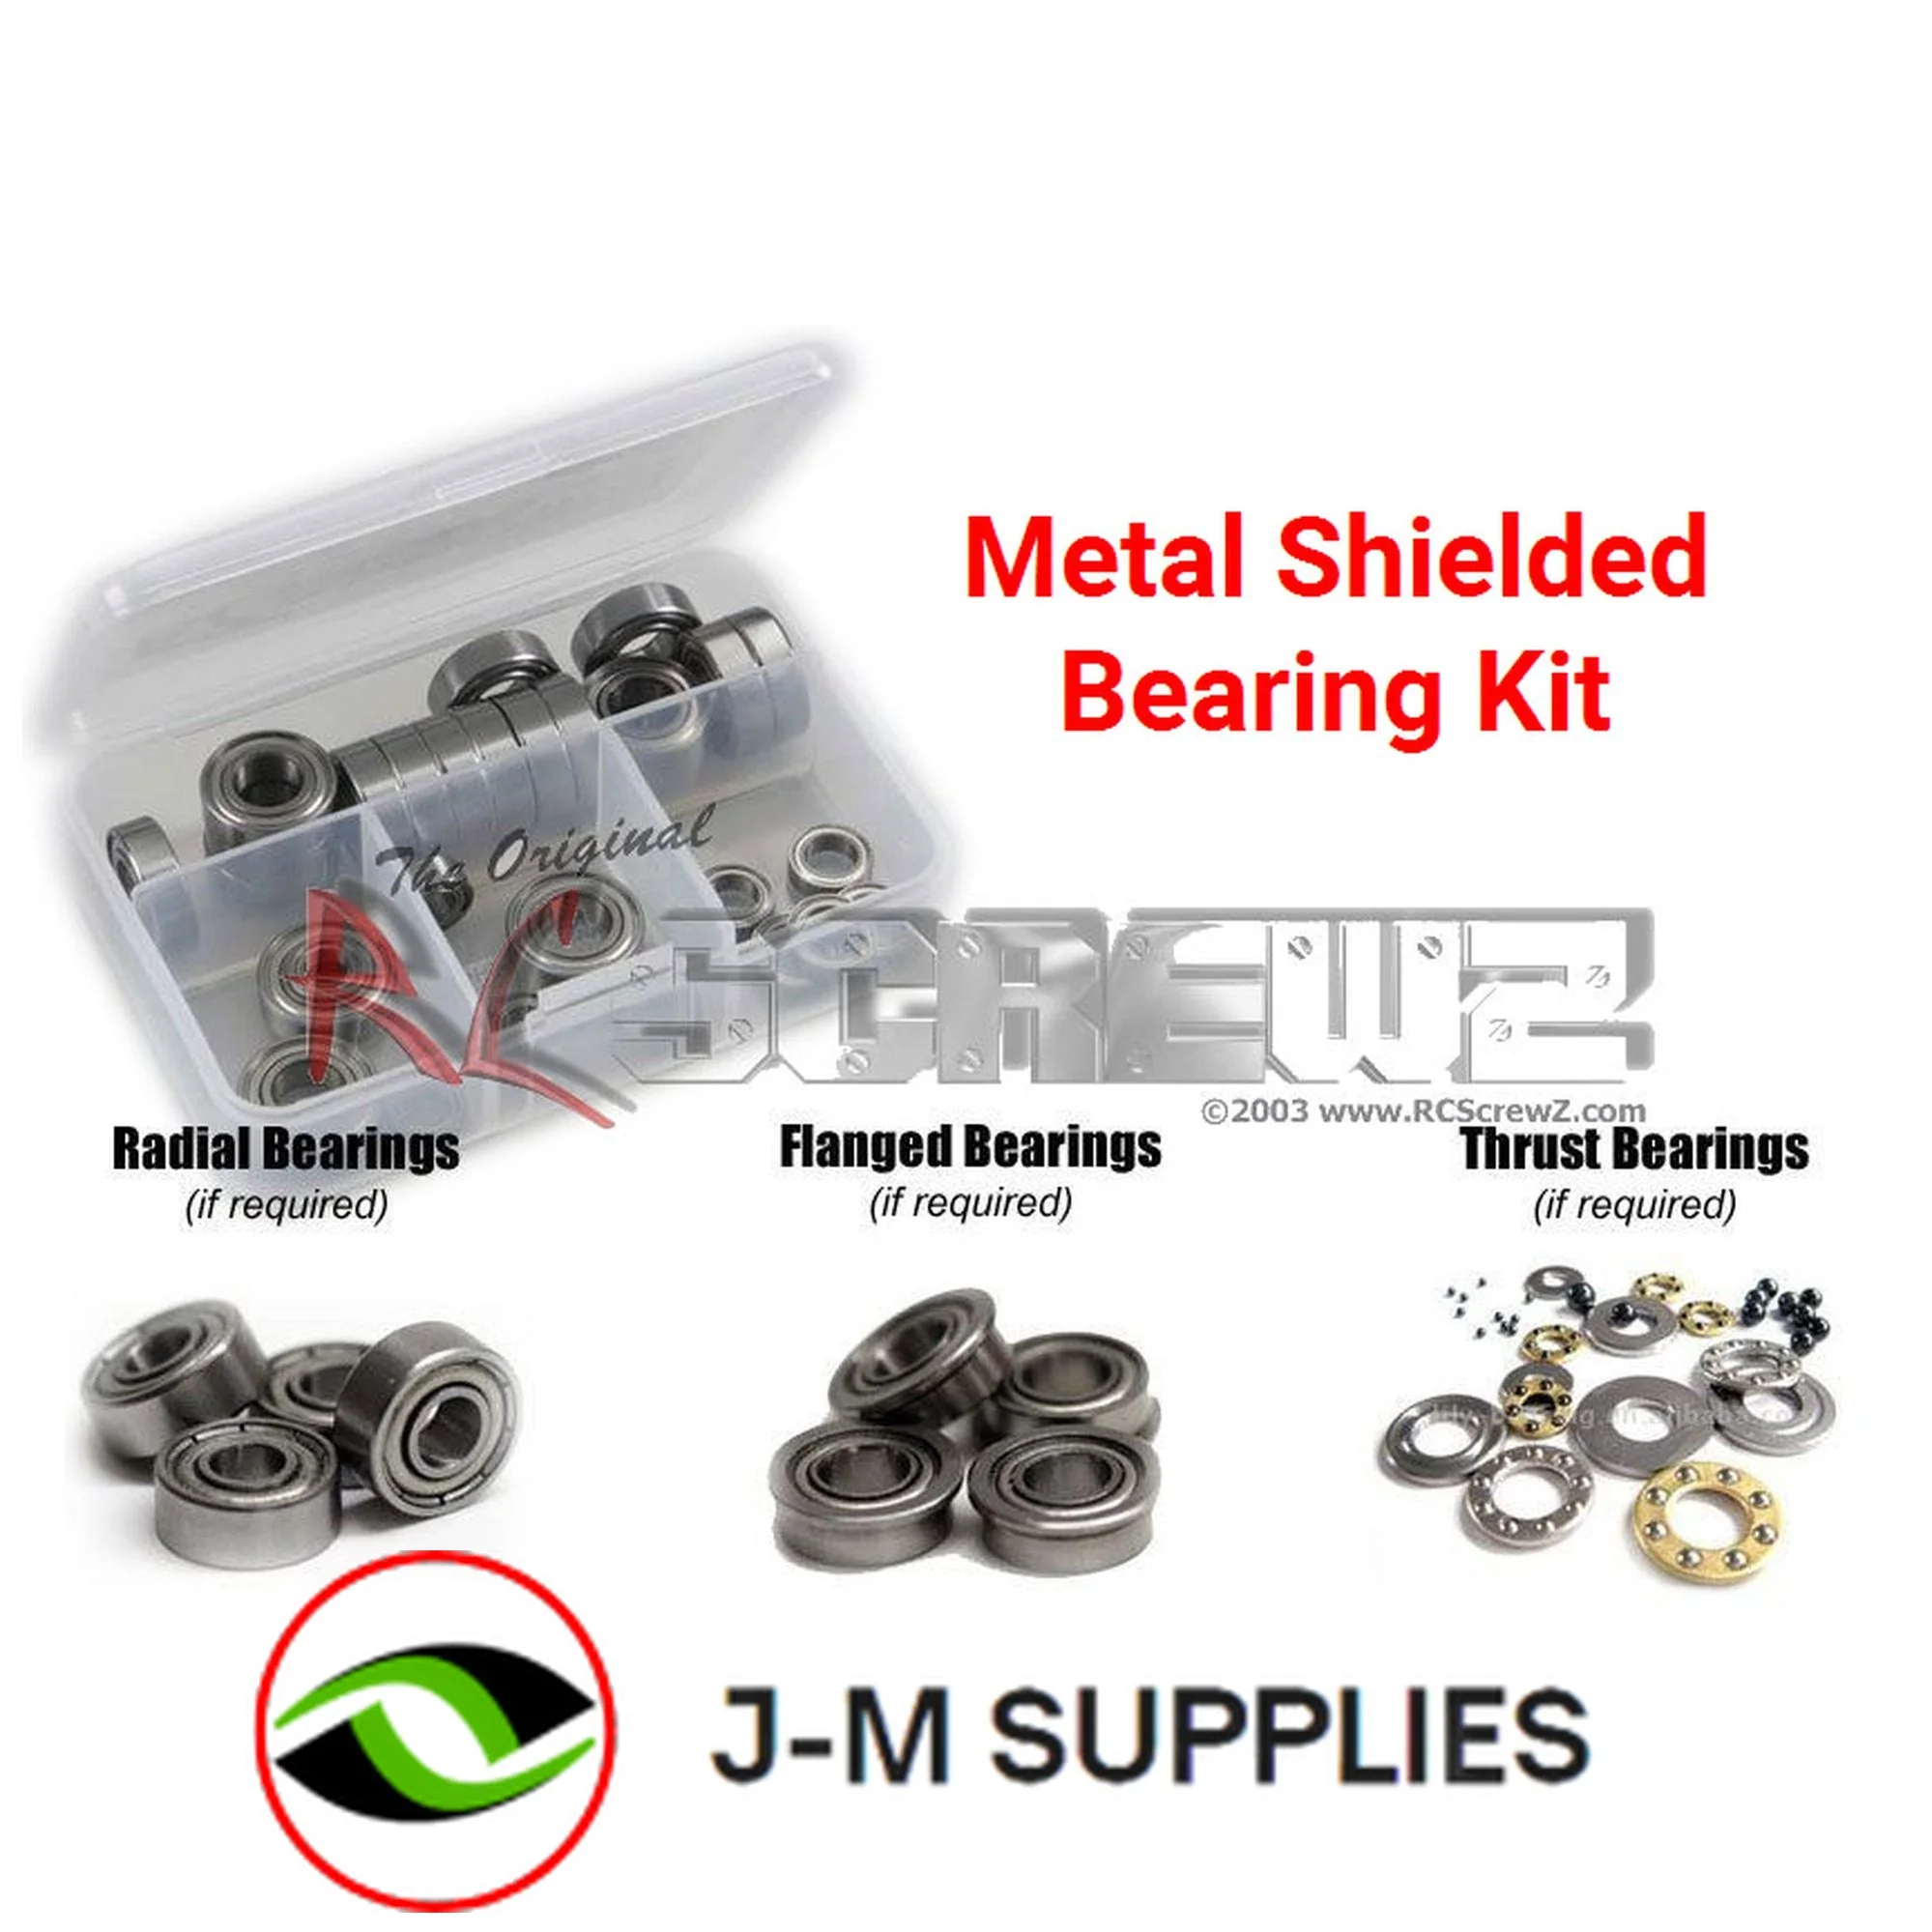 RCScrewZ Metal Shielded Bearing Kit tam105b for Tamiya Nitrage 5.2 #43542 - Picture 1 of 12